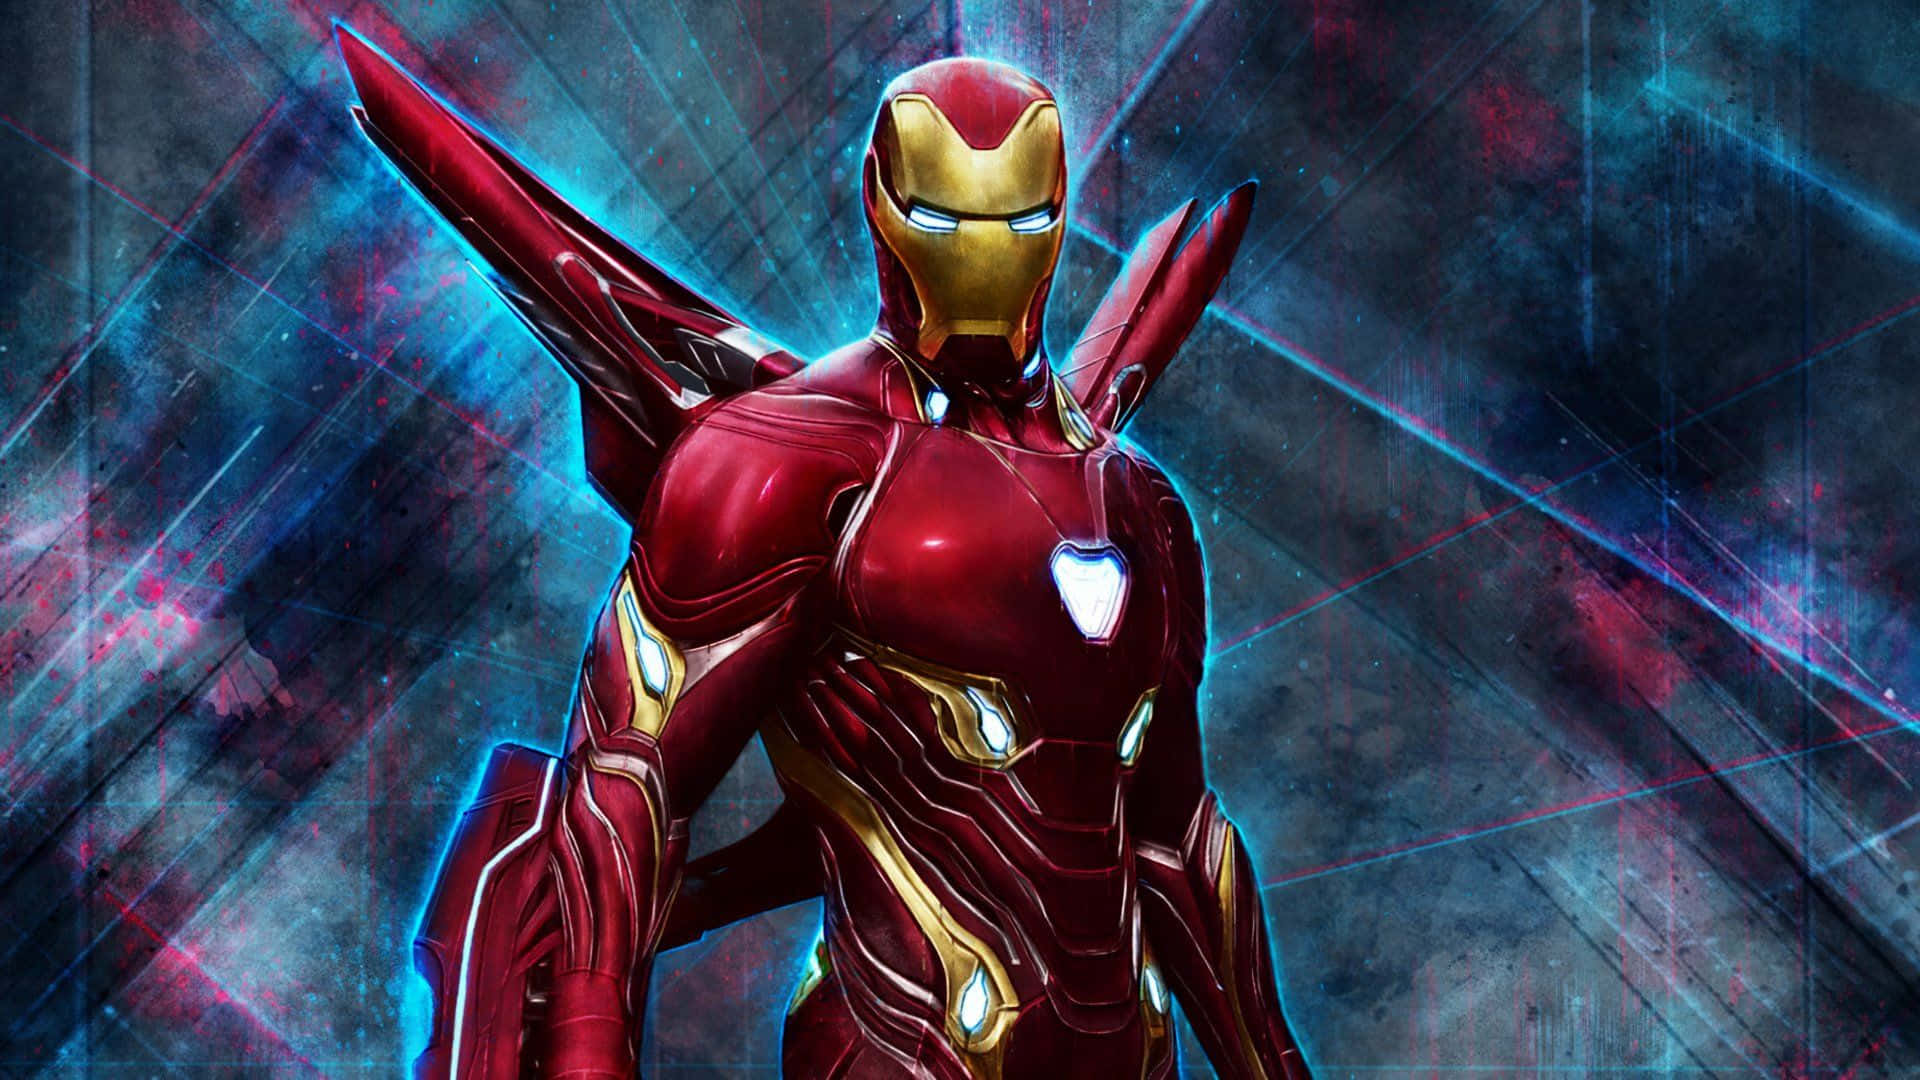 Högresolutionbildpå Iron Man, Hjälten Från Avengers Förenas För Att Försvara Världen. Wallpaper